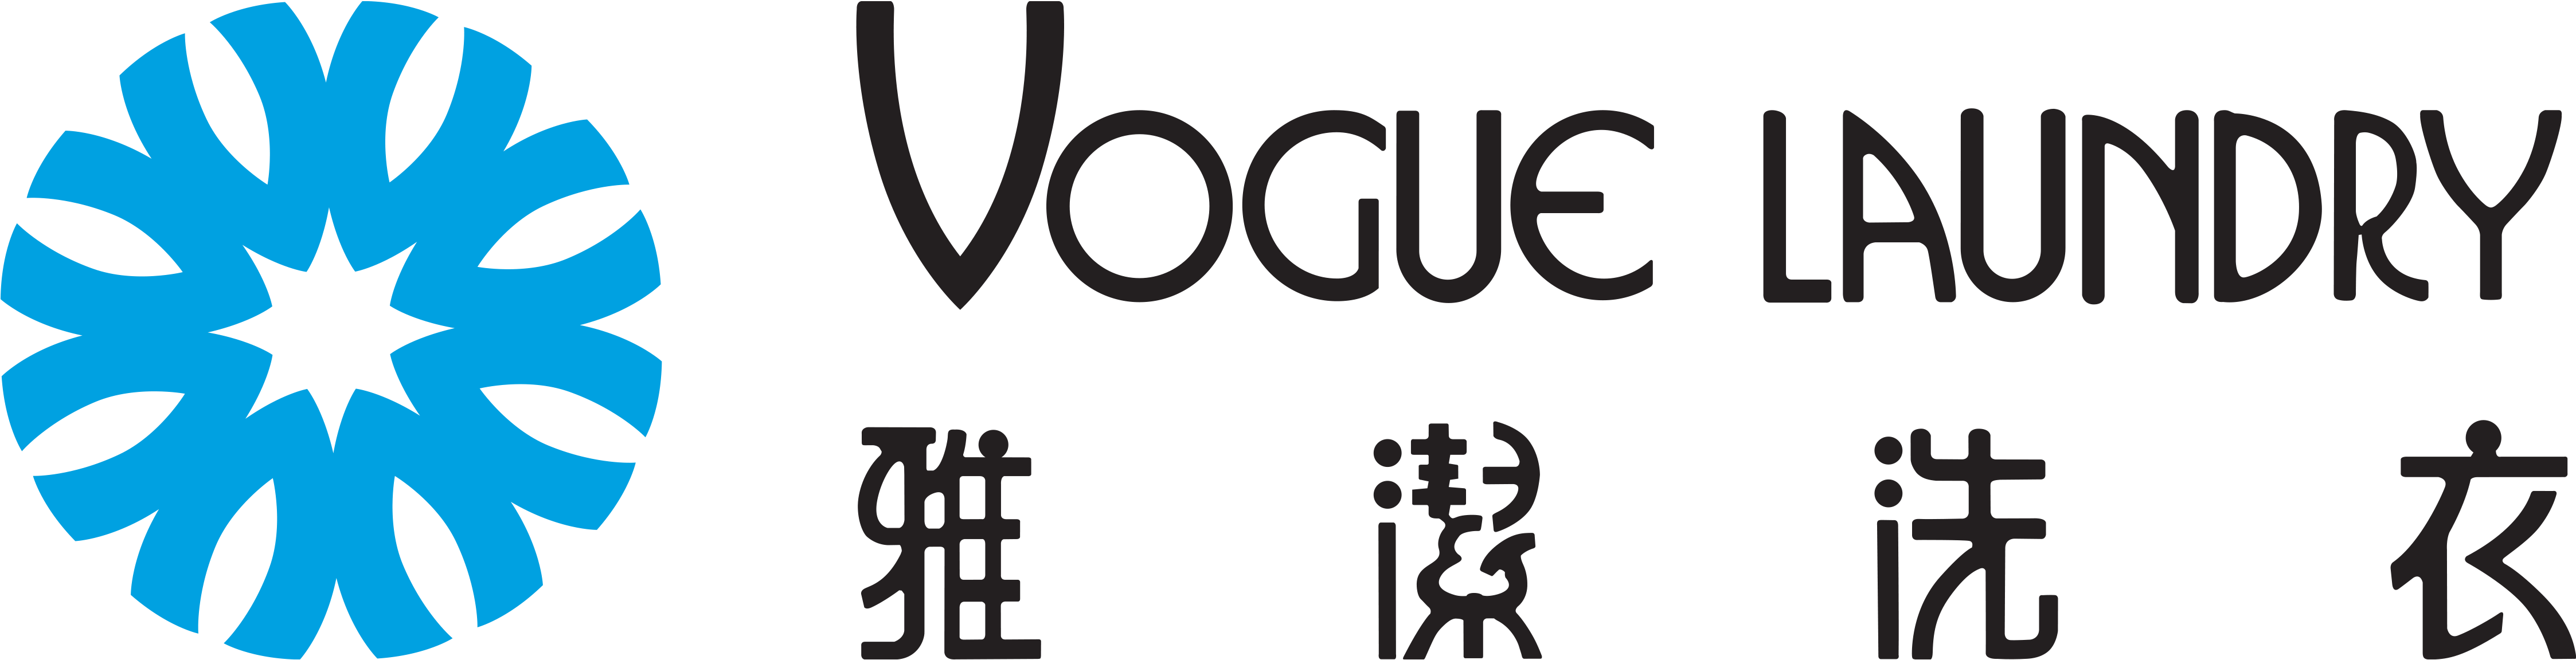 Vogue Laundry-logo - Vogue Laundry (4500x2700), Png Download